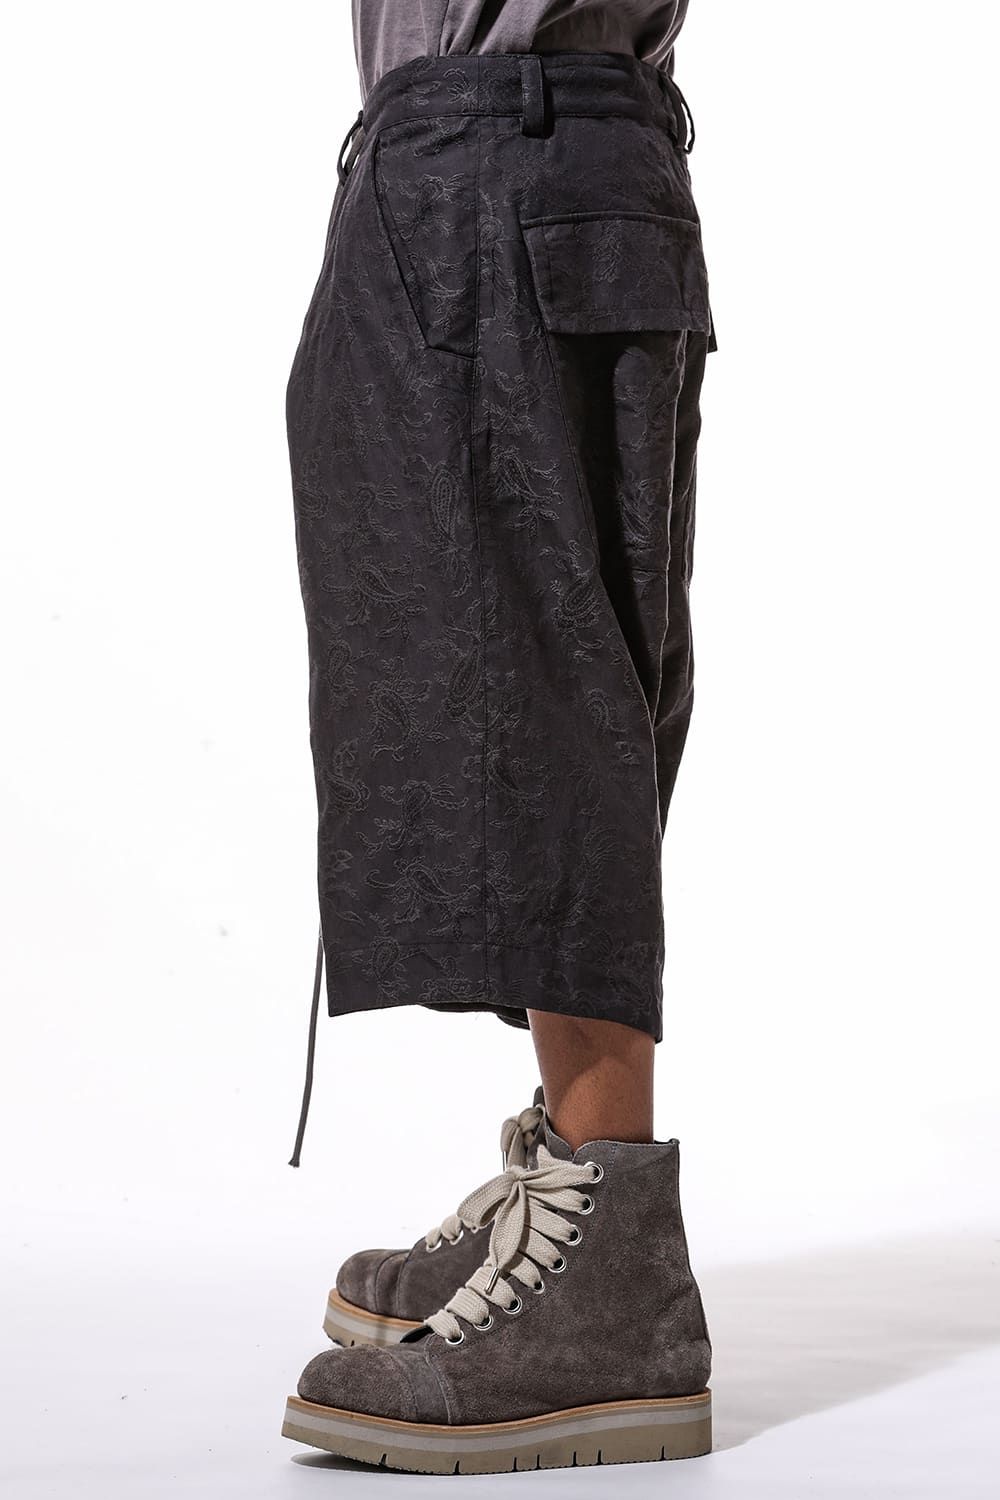 Paisley Front Zip Tuck Shorts"Black"/ペイズリーフロントジップタックパンツ"ブラック"